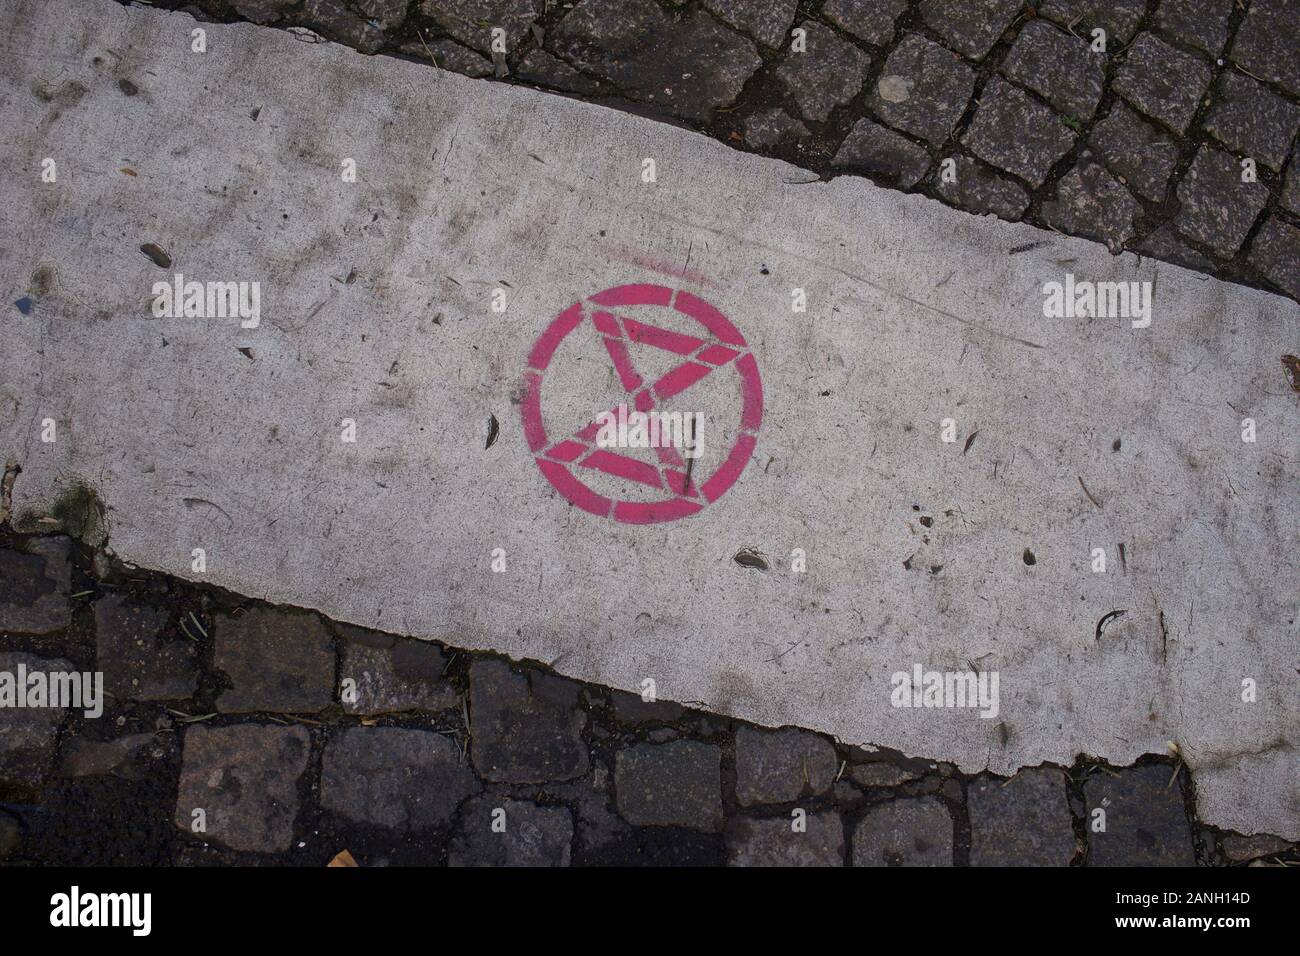 Extinción rebelión Logo, graffiti estampadas en la carretera, París, enero de 2020 Foto de stock